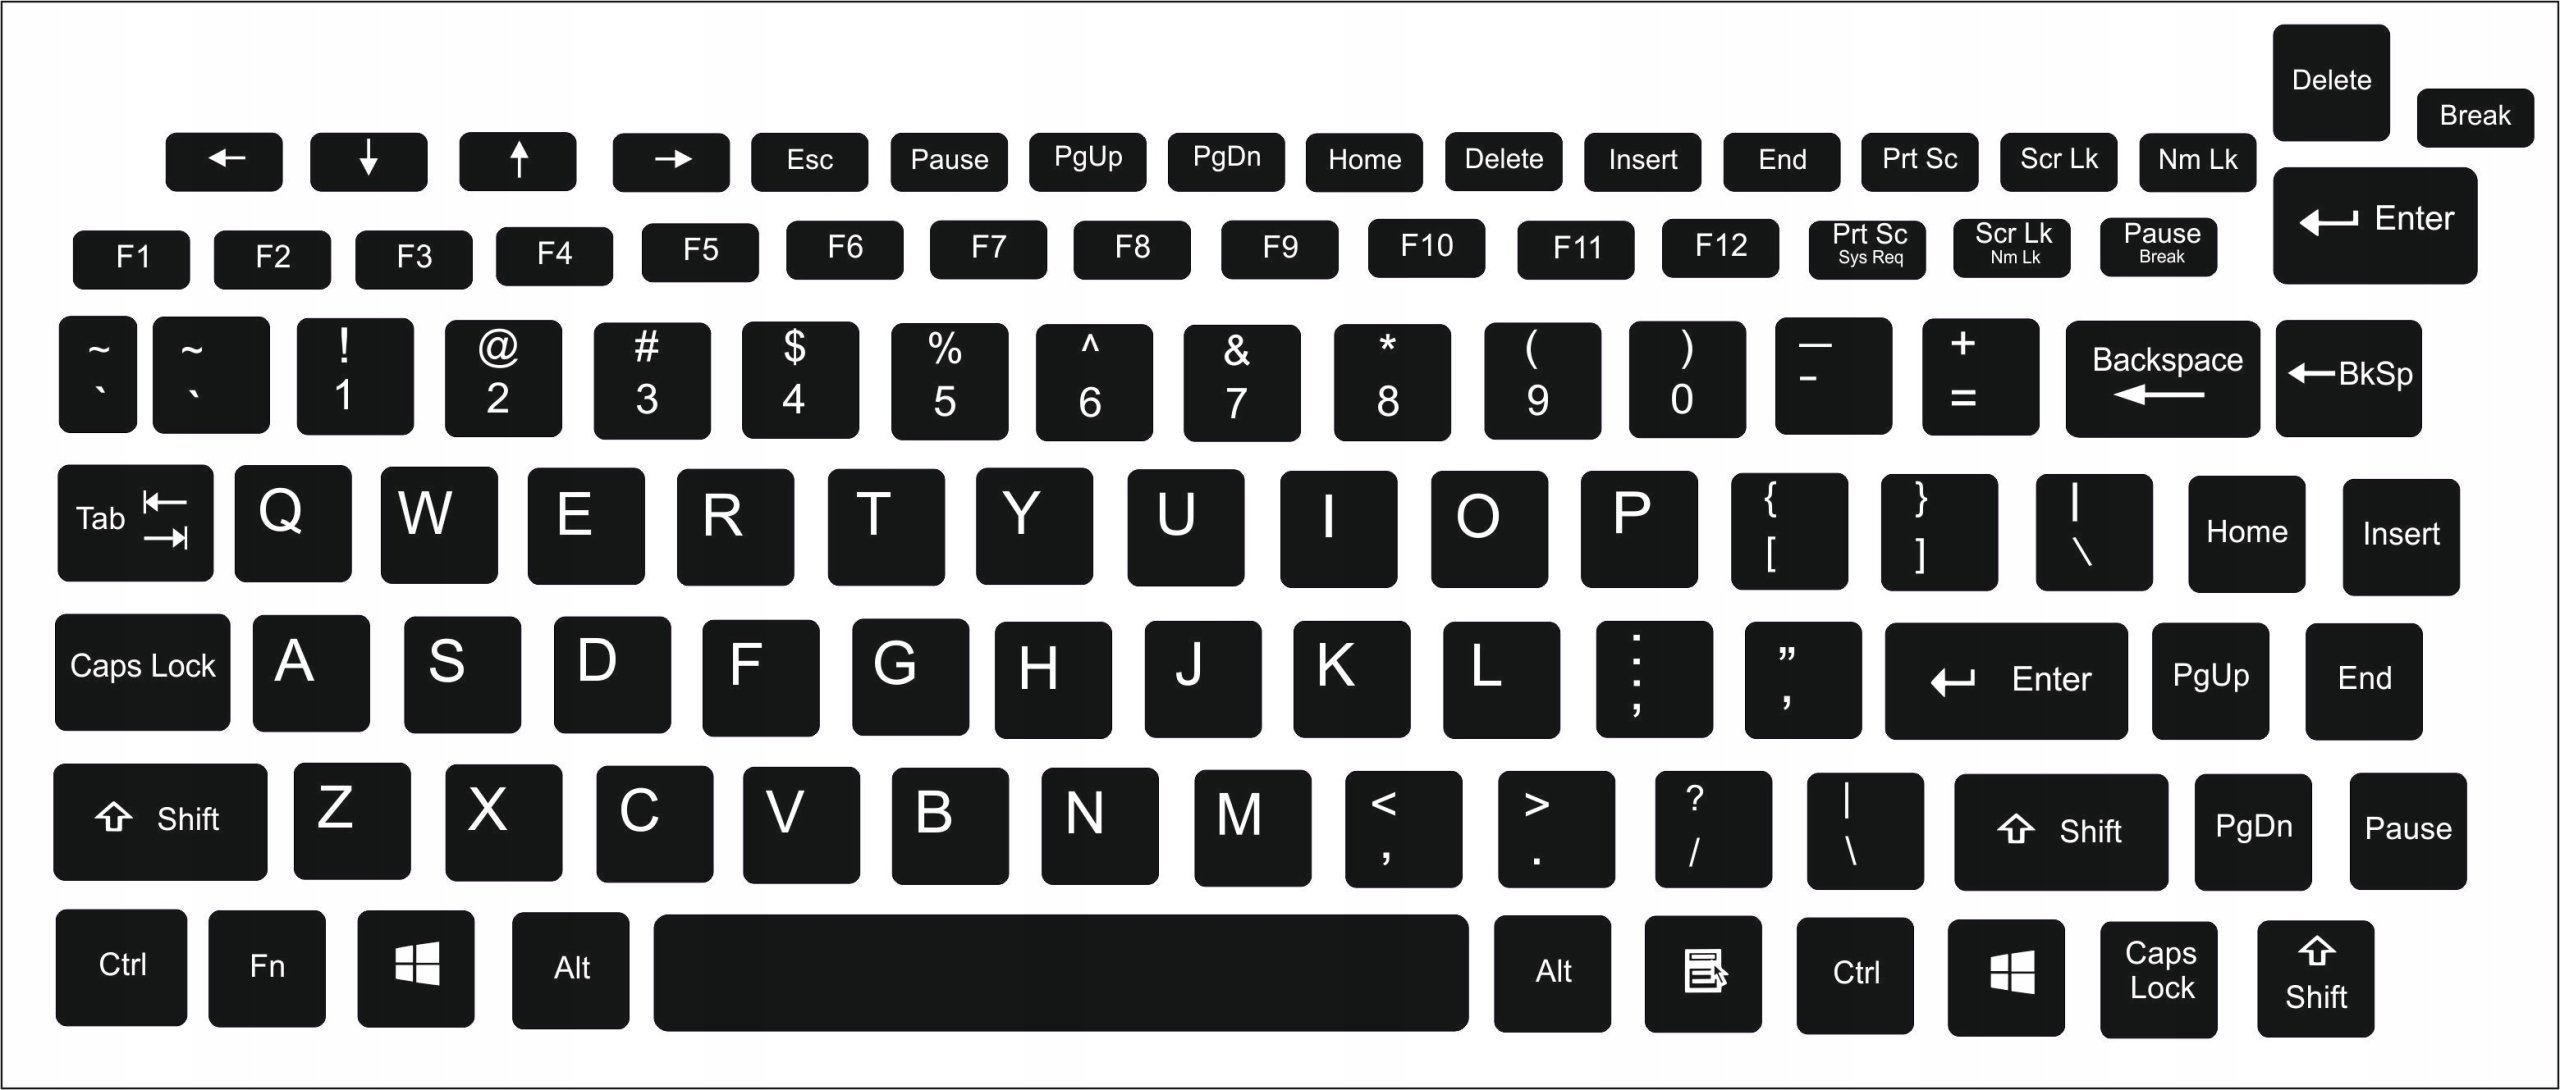 Компьютер на английской раскладке. Раскладка "клавиатура d-610". X12 клавиатура. Раскладка русской клавиатуры. Распечатка клавиатуры компьютера.